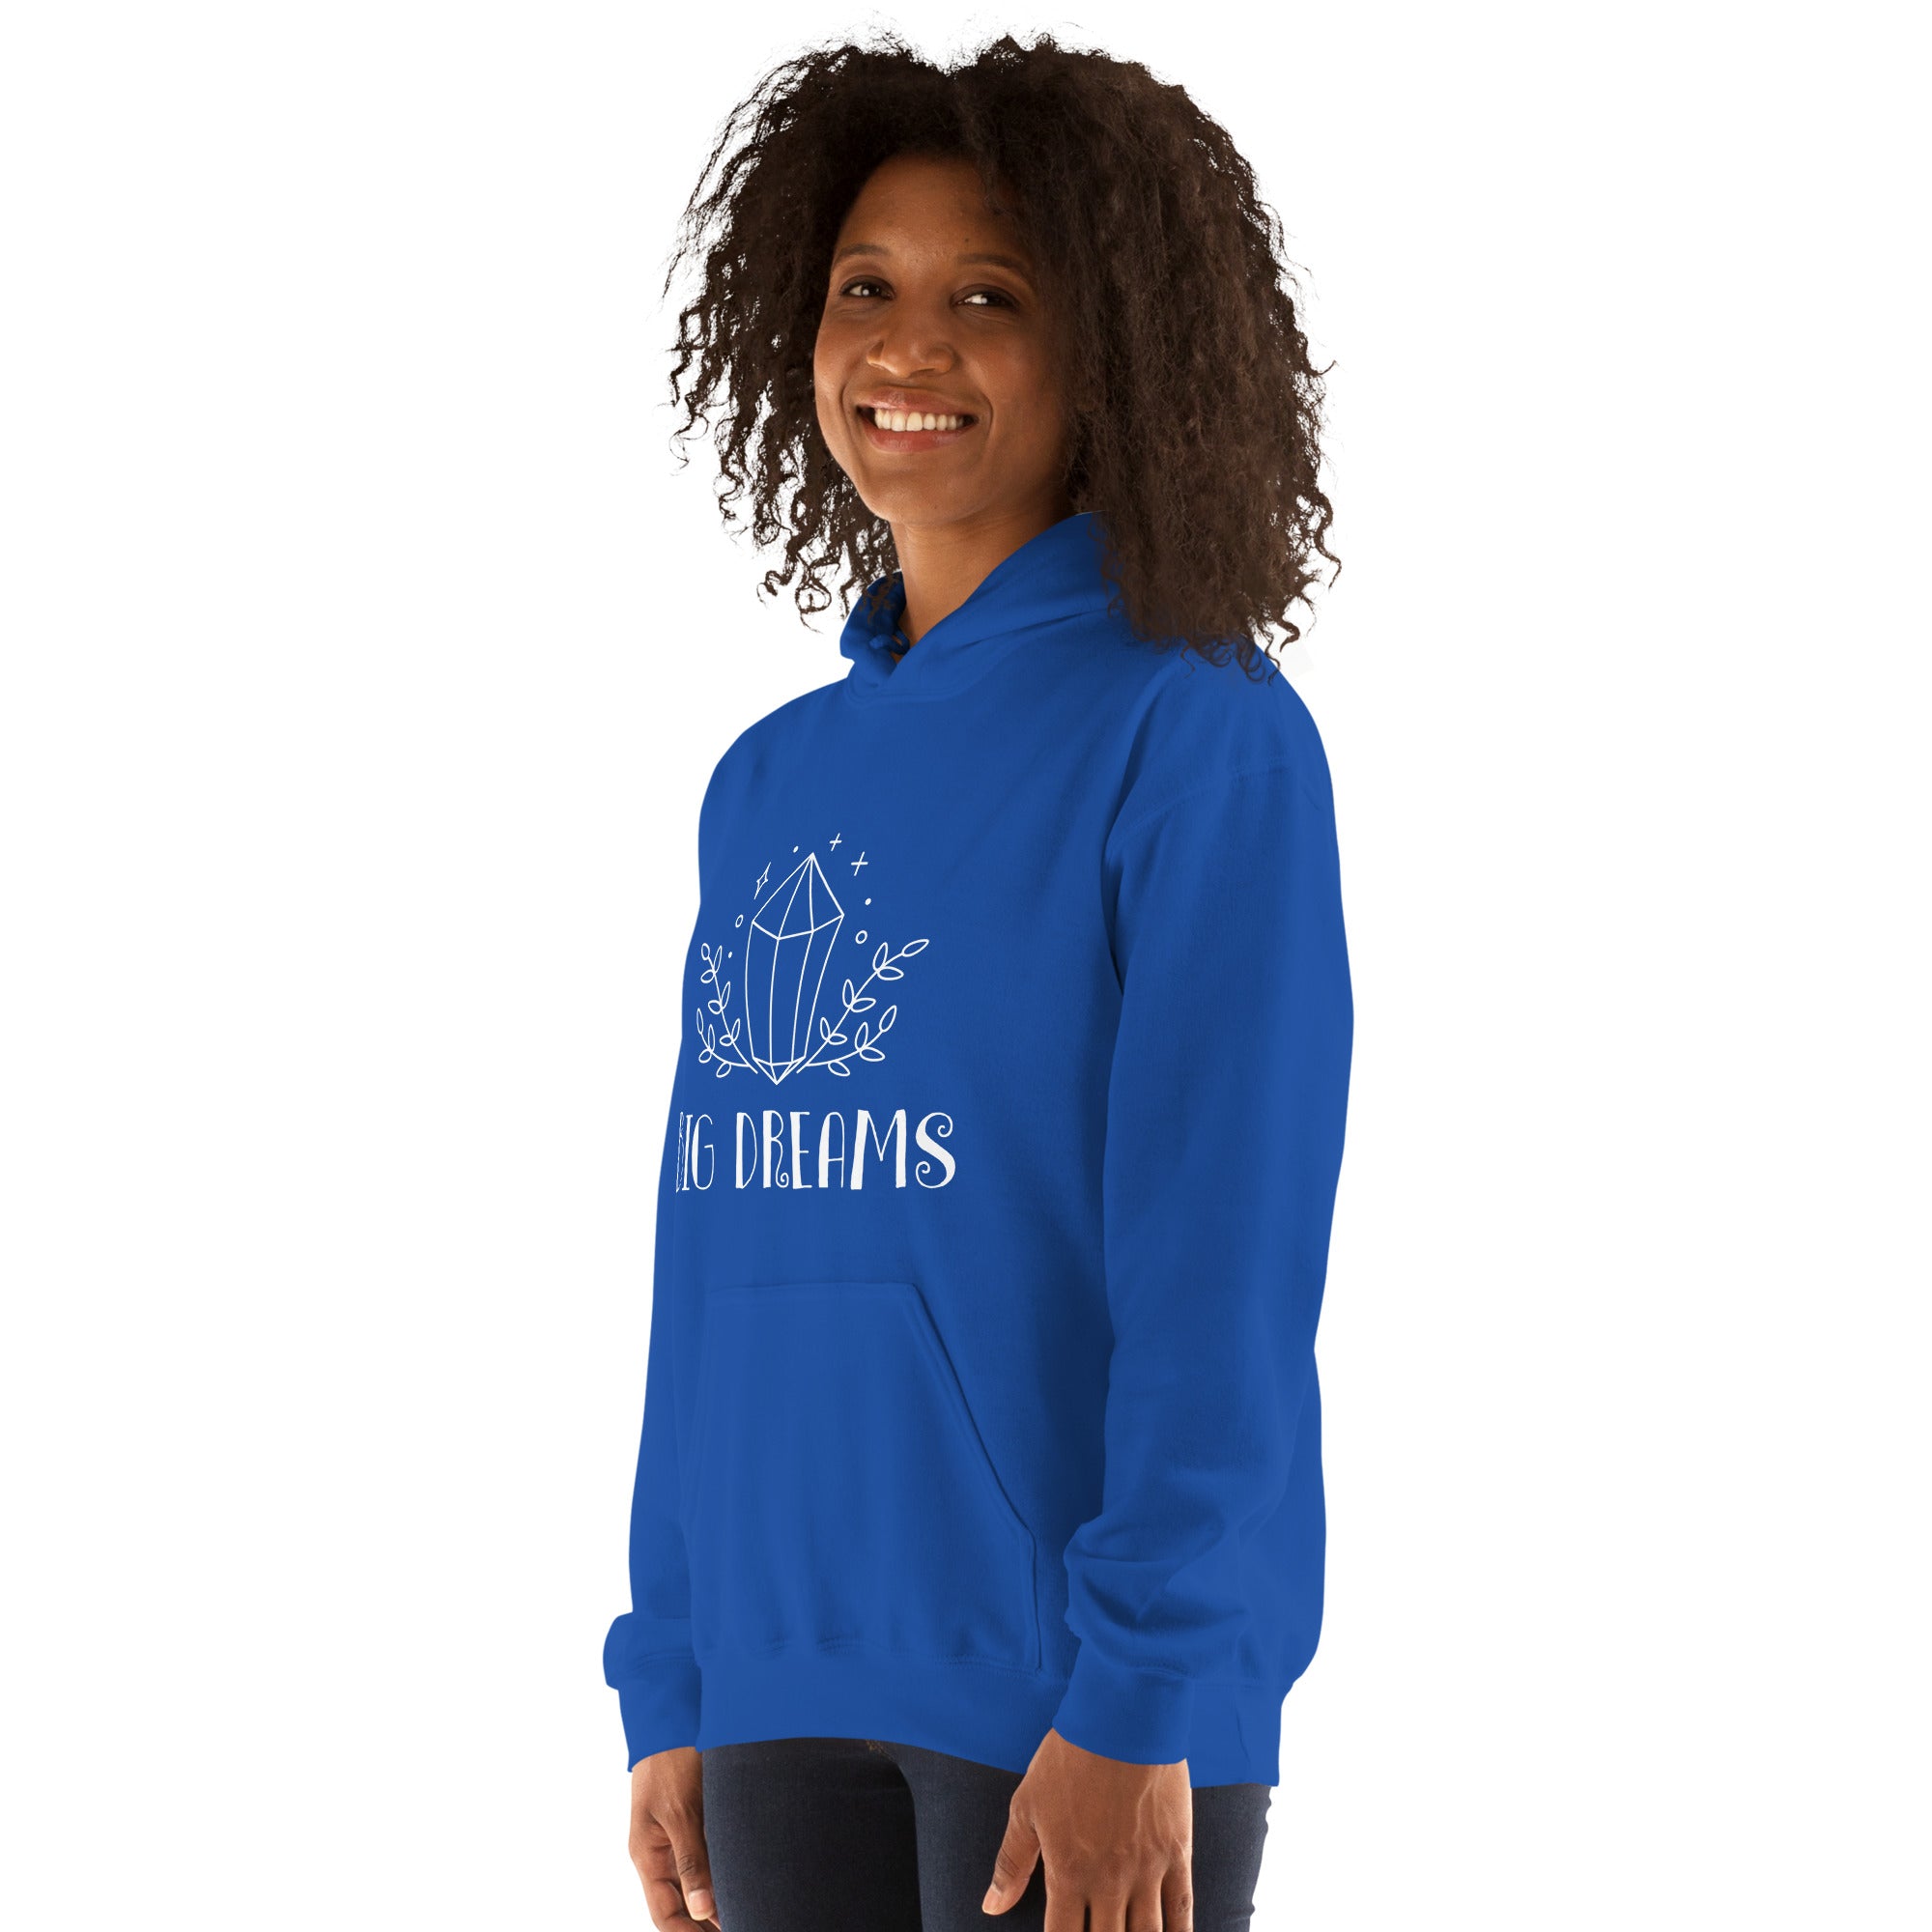 Big Dreams Motivational Hoodie / Hooded Sweatshirt for Women